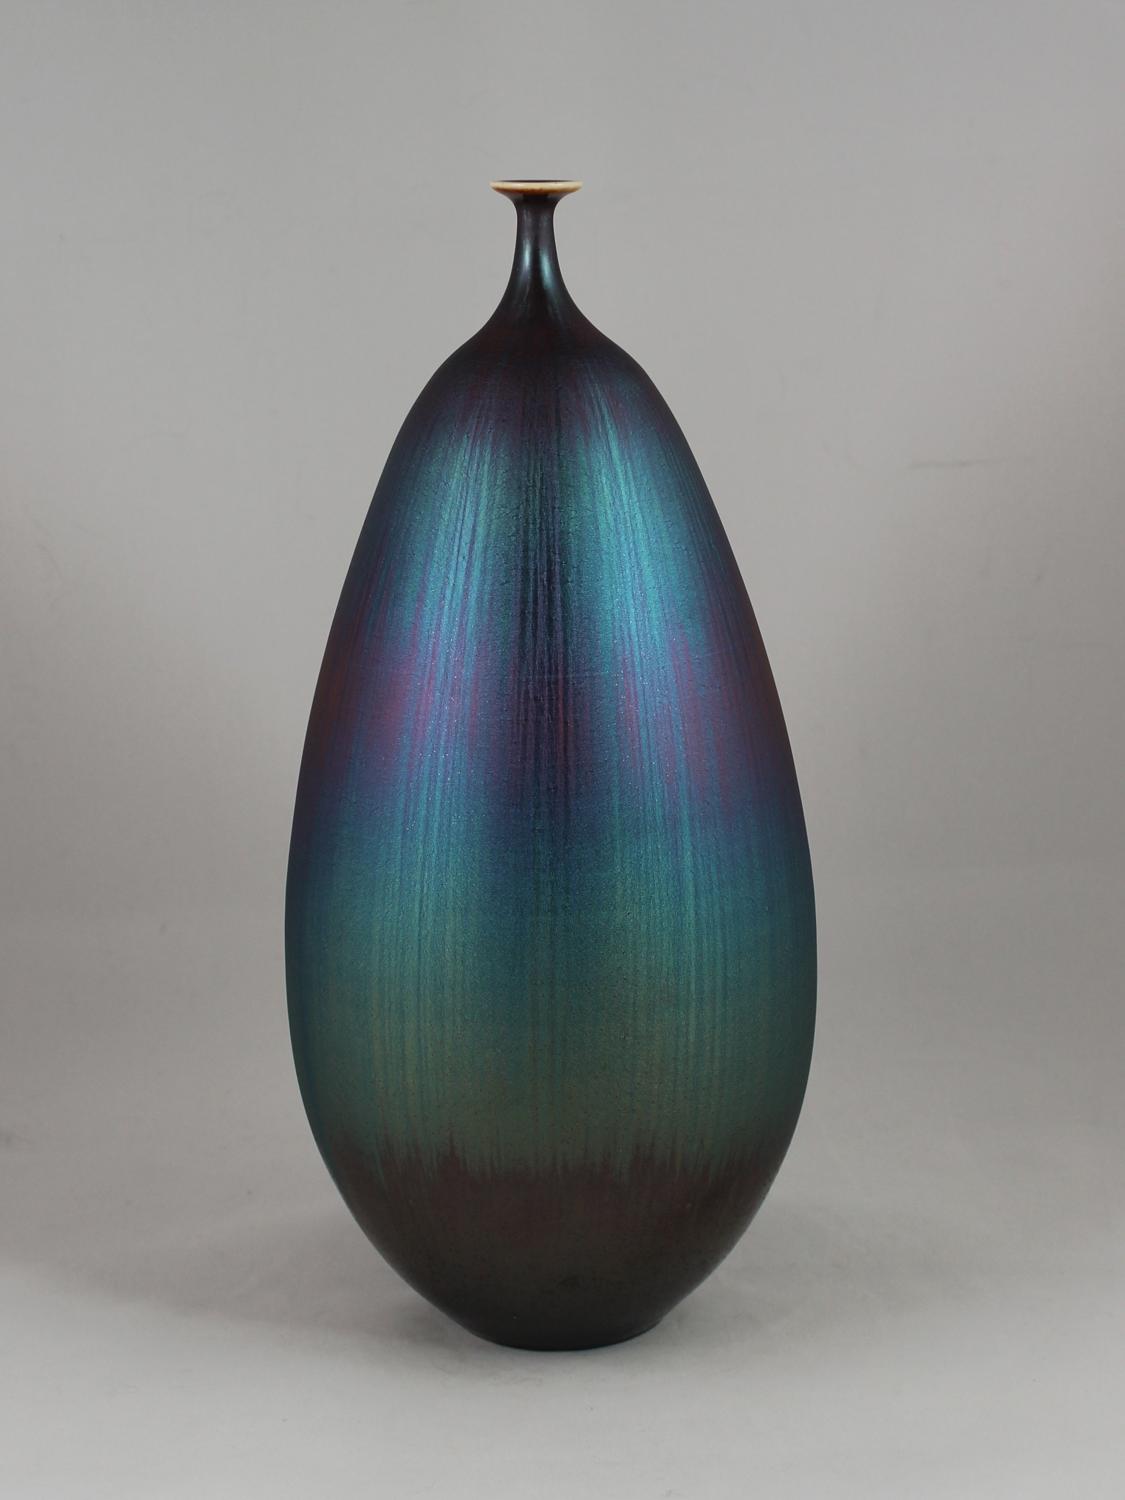 Hideaki Miyamura, Vase with Blue Hare's Fur Glaze